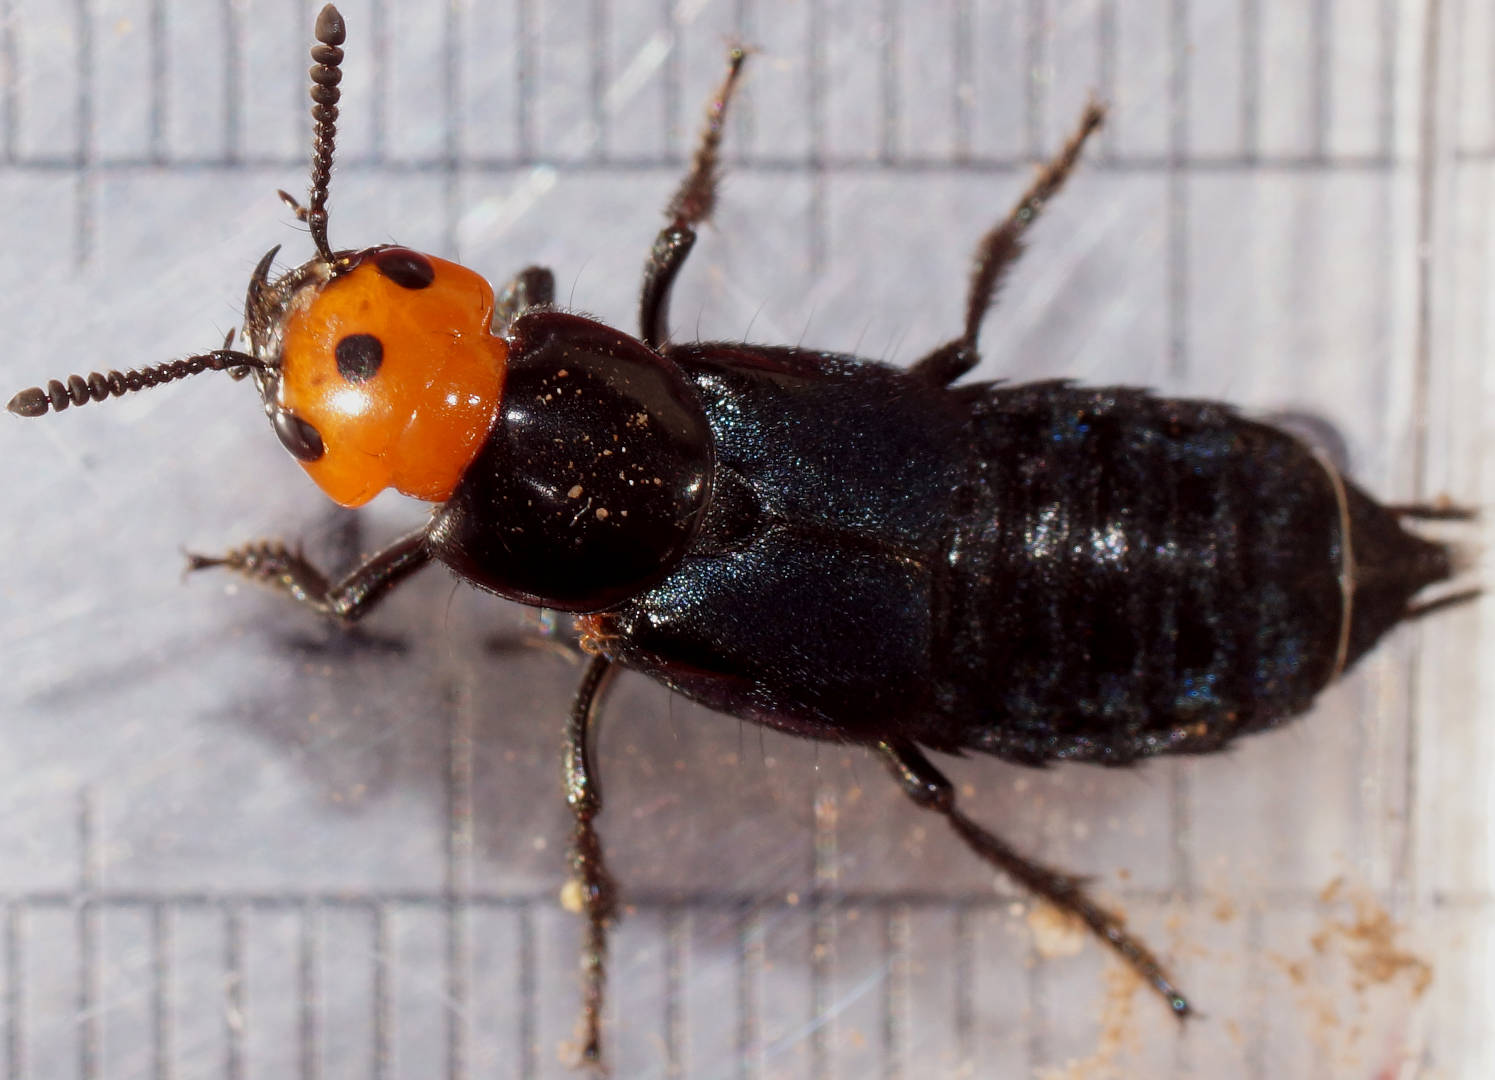 Devil's Coach-horse Beetle (Creophilus erythrocephalus)